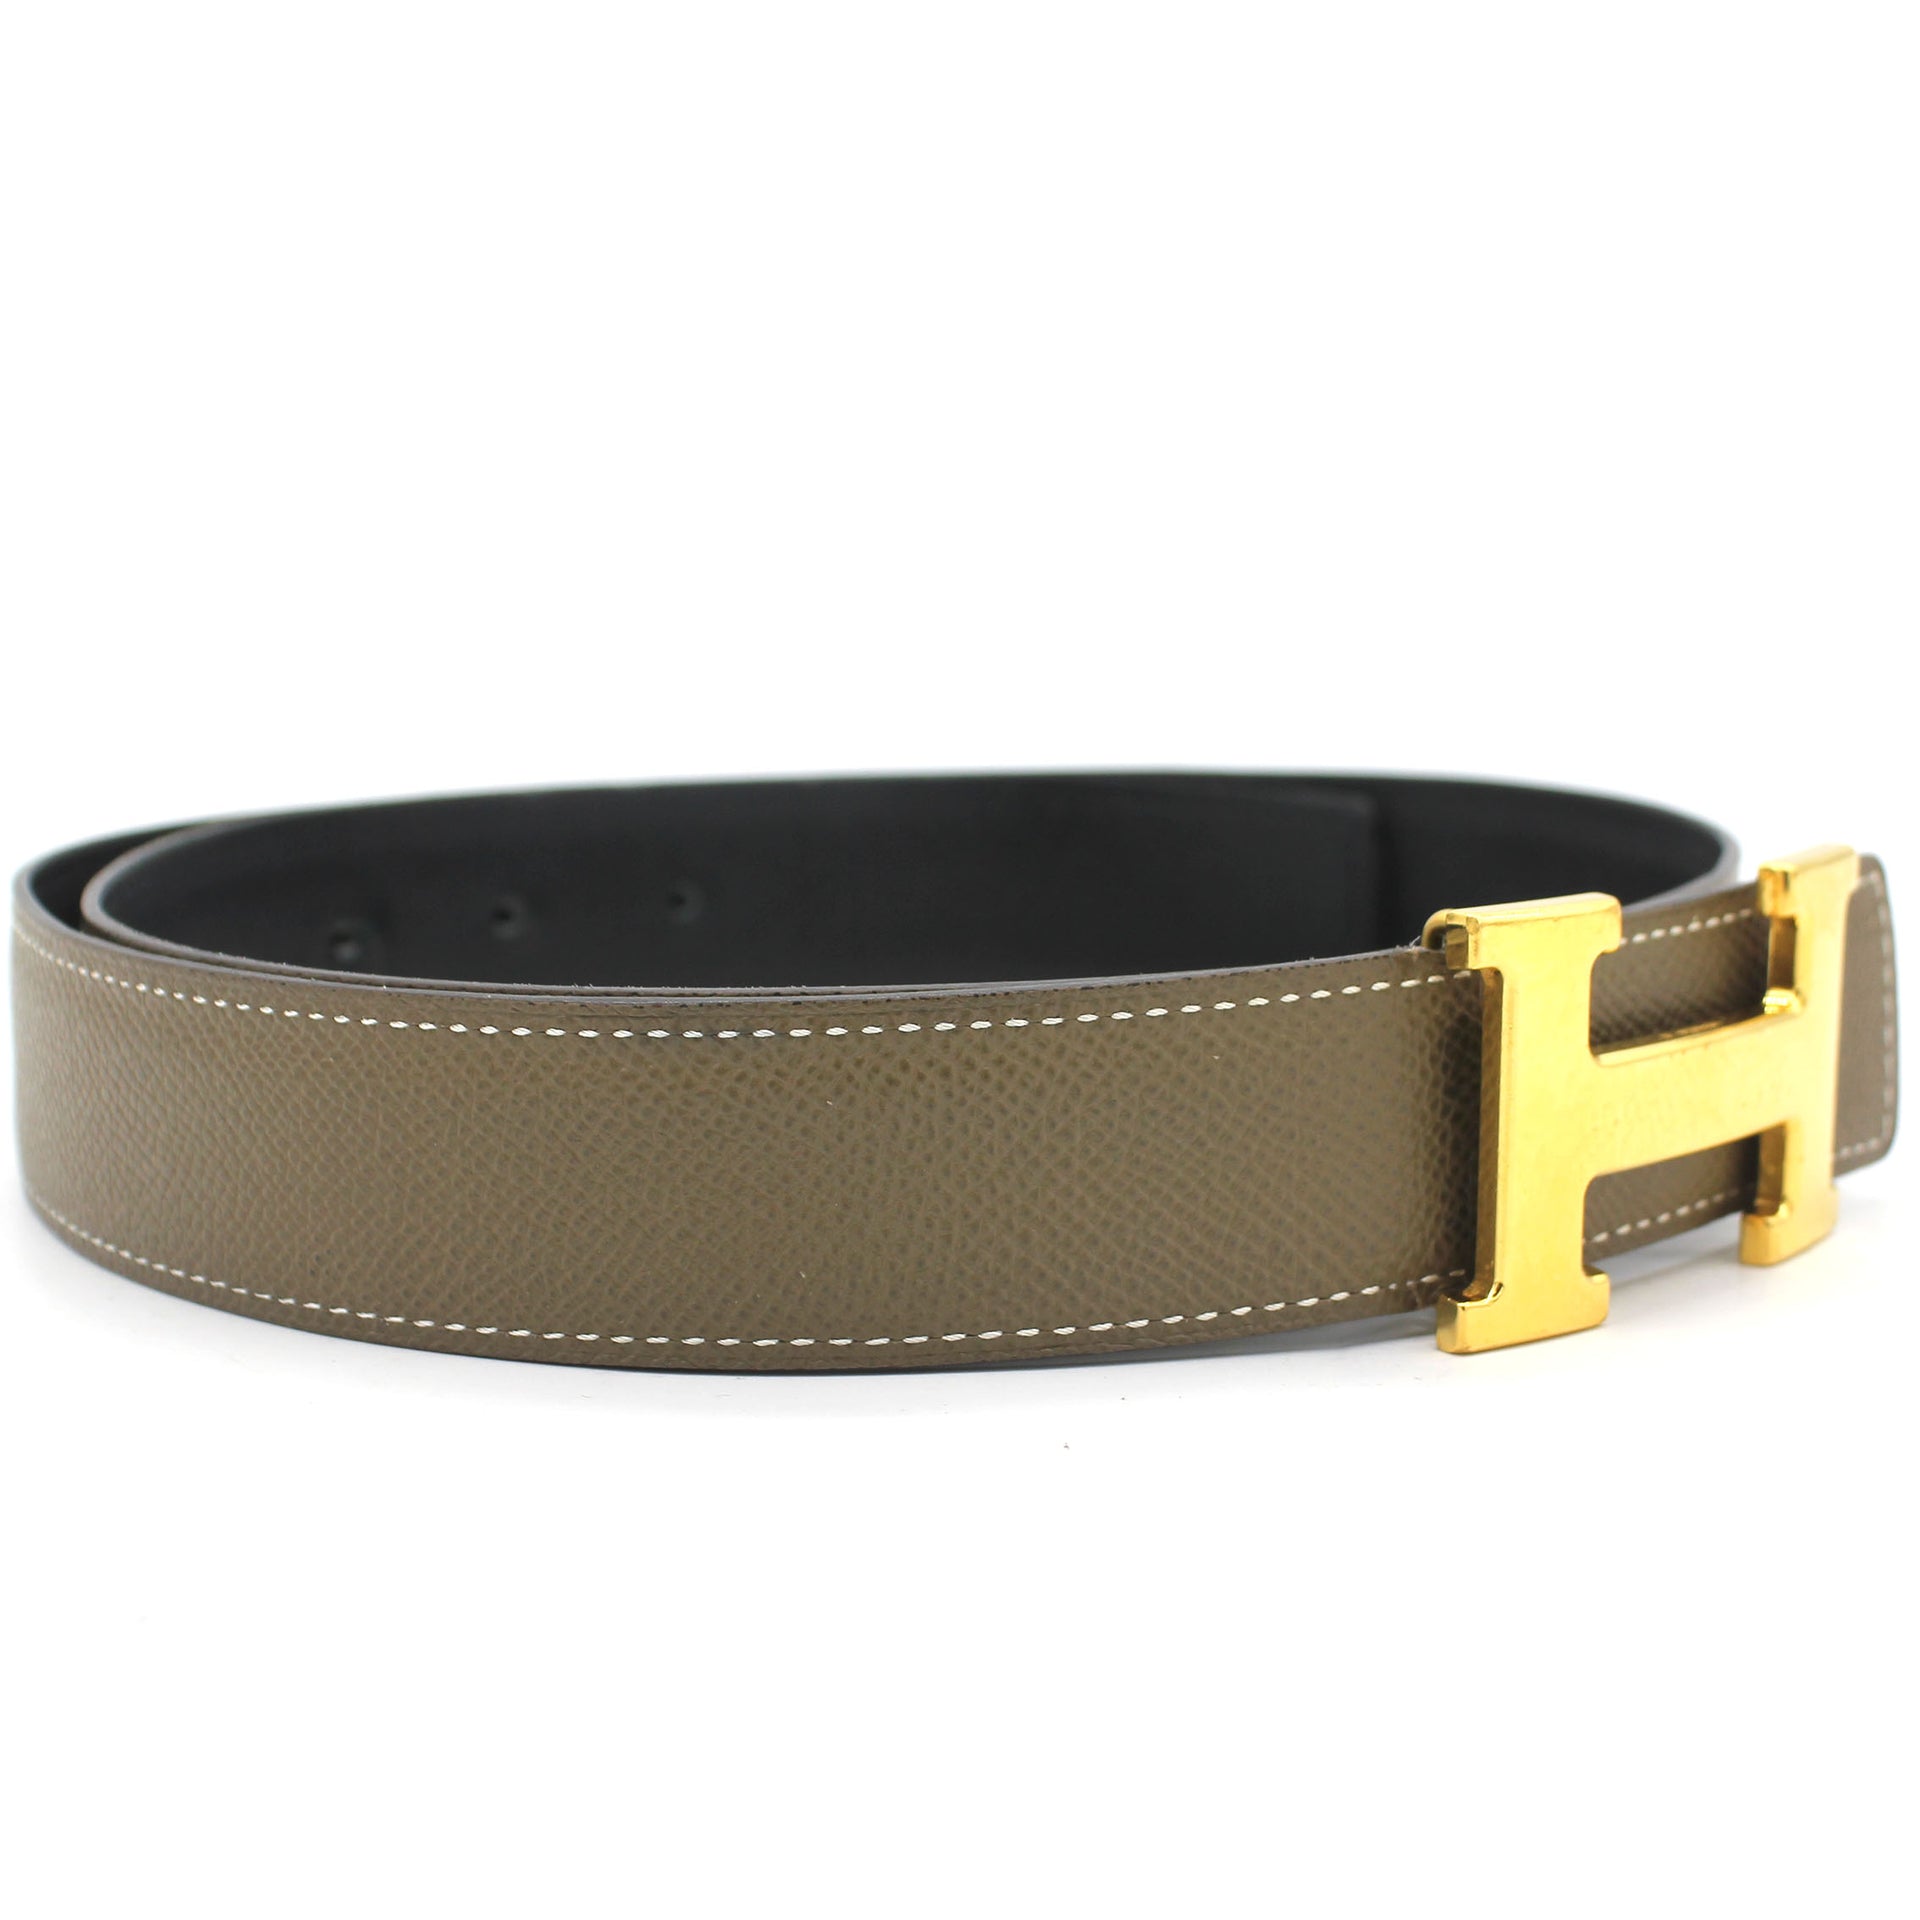 H Martelee belt buckle & Reversible leather strap